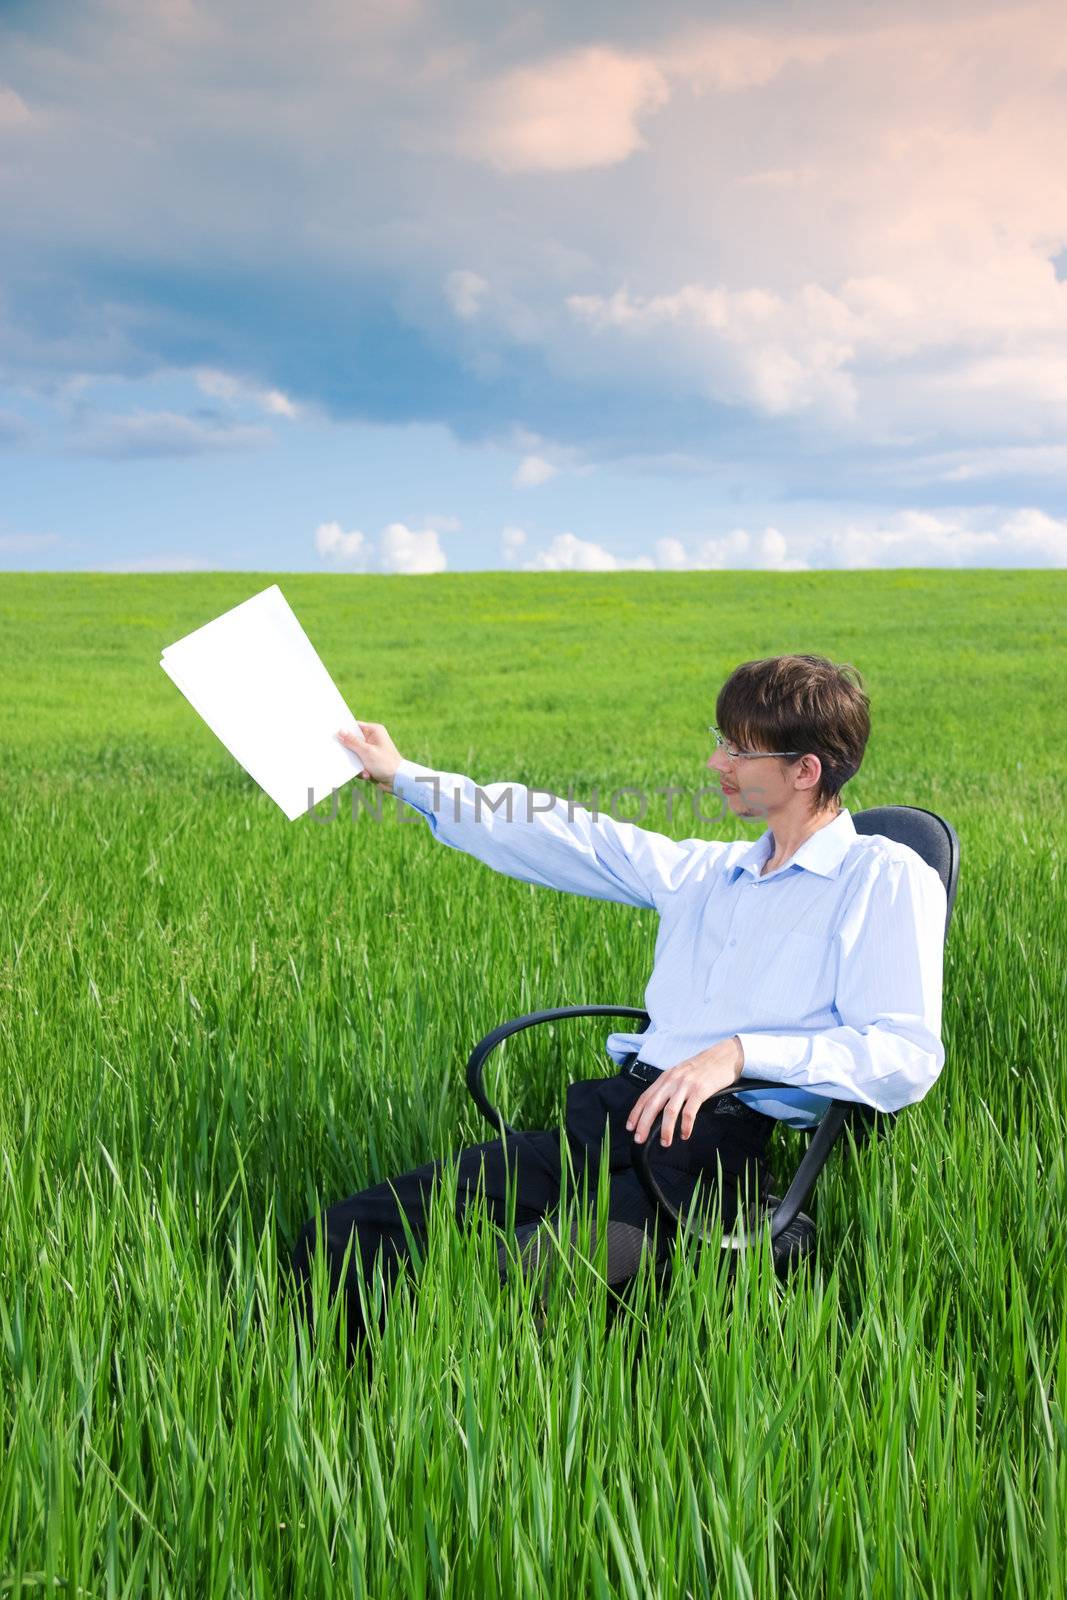 Businessman working on green grassland under blue sky